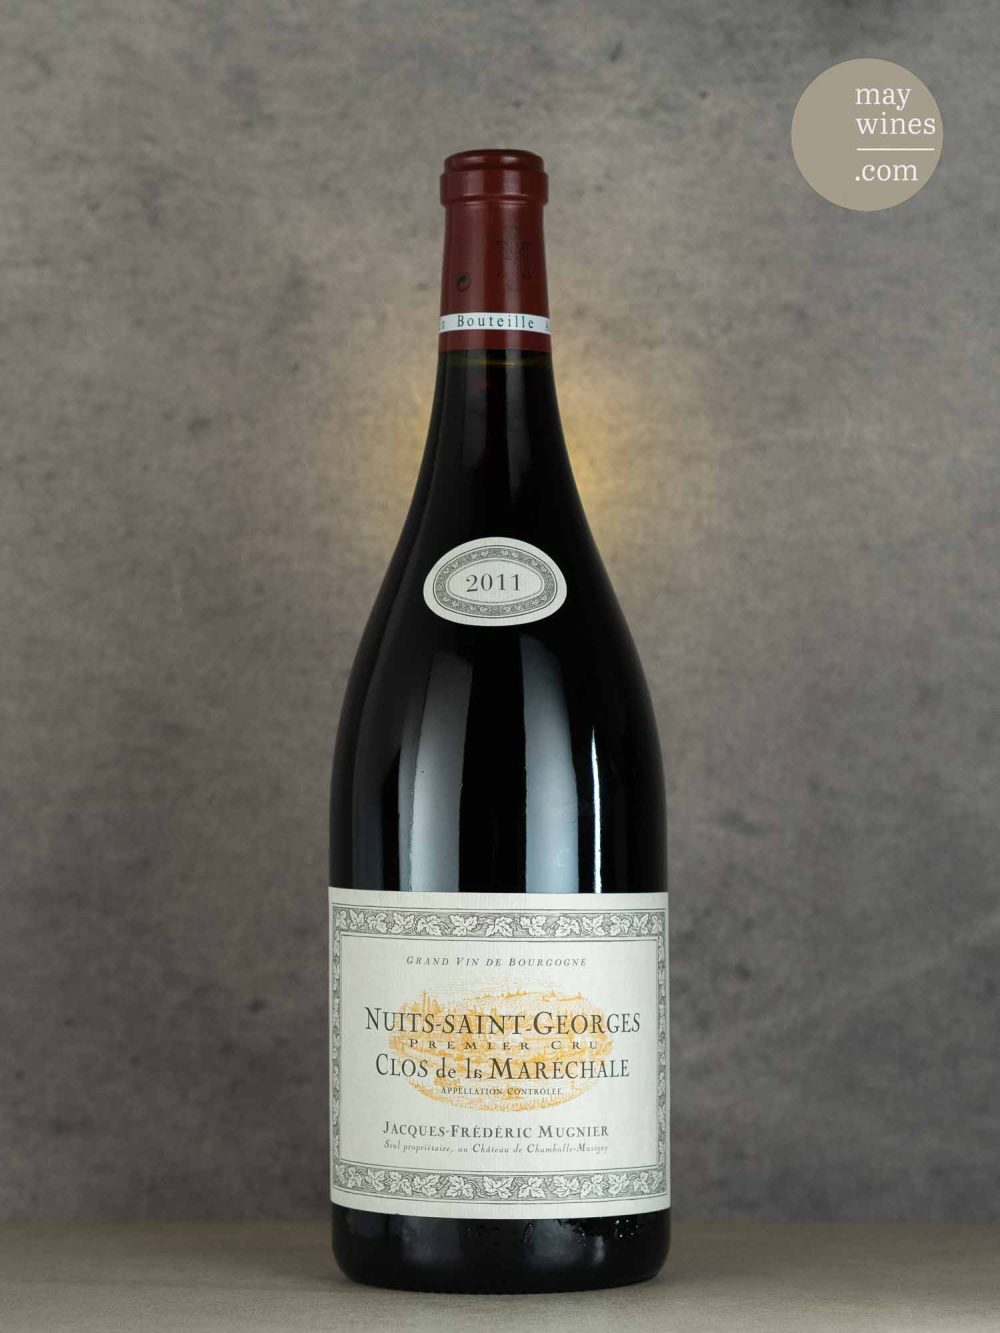 May Wines – Rotwein – 2011 Clos de la Maréchale Premier Cru - Jacques-Frédéric Mugnier